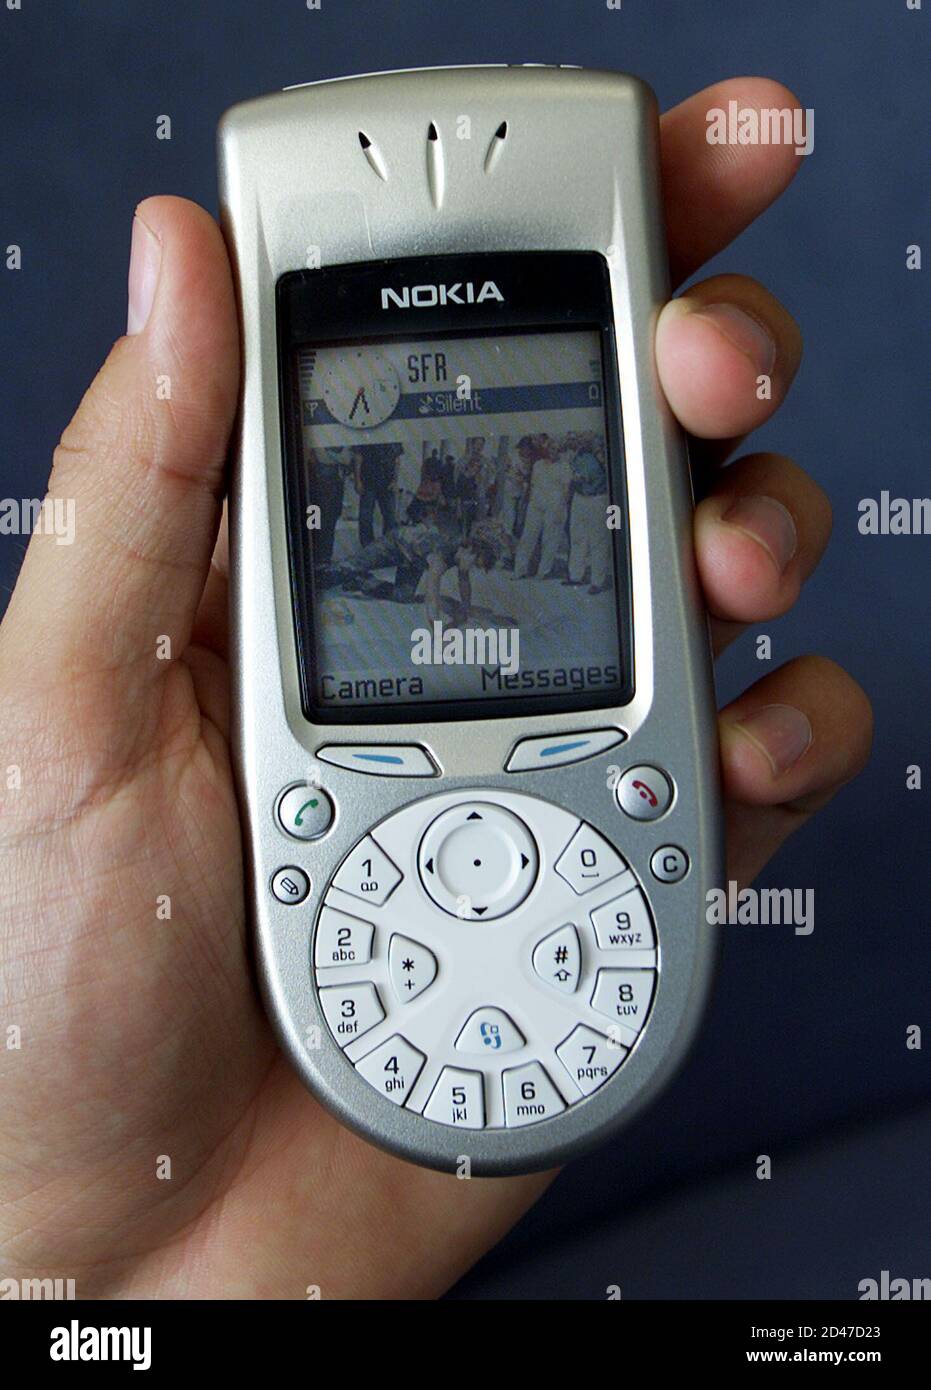 Ein Nokia-Mitarbeiter zeigt das neue Handy 3650 während einer  Pressekonferenz in Marseille, 6. September 2002. Nokia stellte sein neue  Produkt, das 3650 ein neues auffällige bildgebende Handy mit einem  integrierten hochauflösenden Kamera,